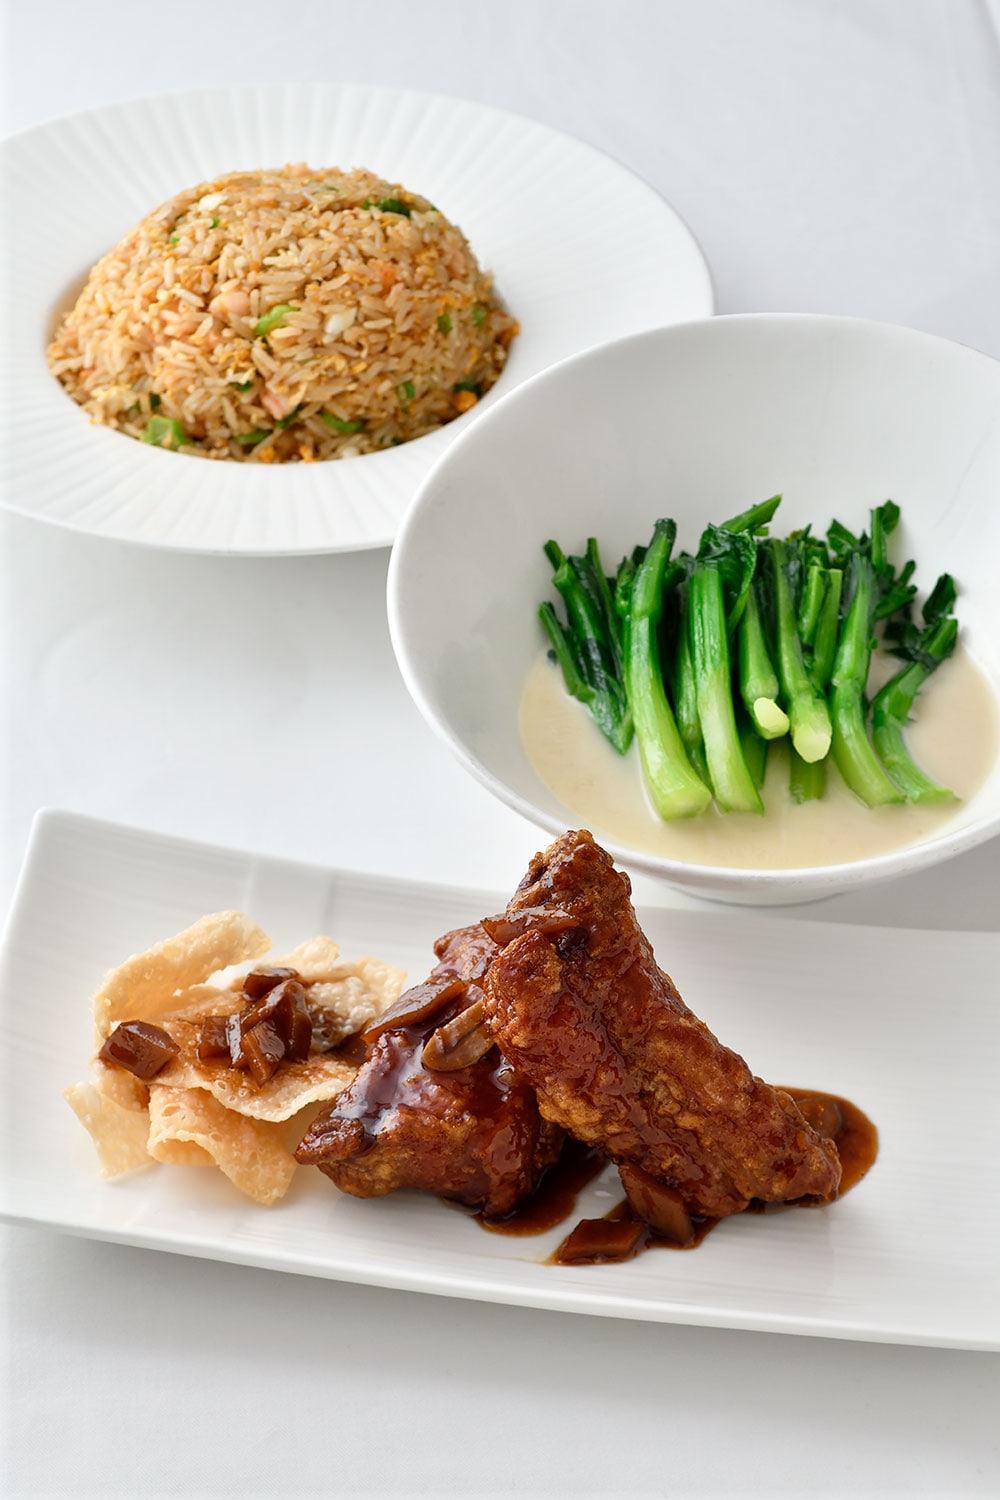 香港産の豚のスペアリブ、魚のダシで煮込んだ青菜、チャーハン。